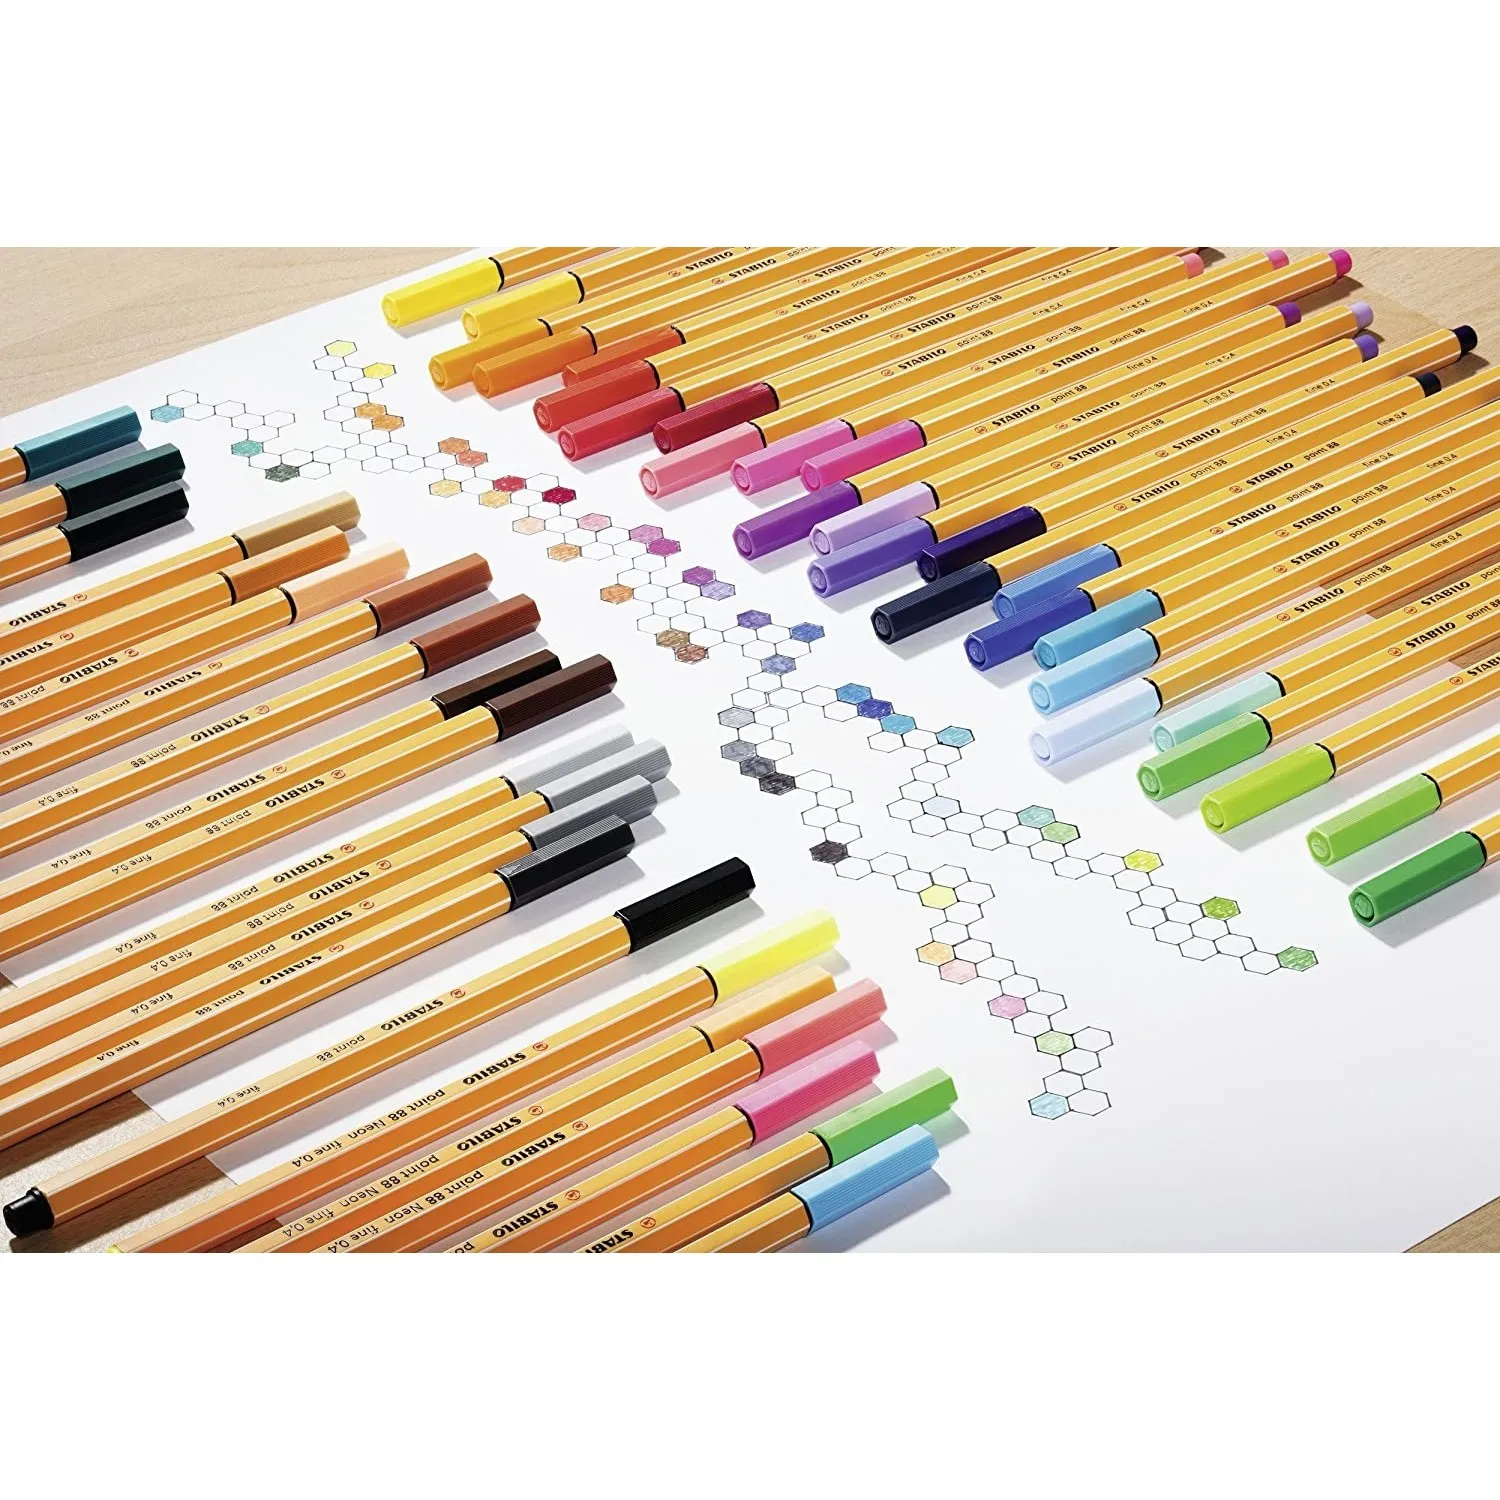 Stabilo Point 88 Parade juego de 20 colores N:8820-03 tinta a base de agua seca al instante mientras la escritura no mancha, proporciona